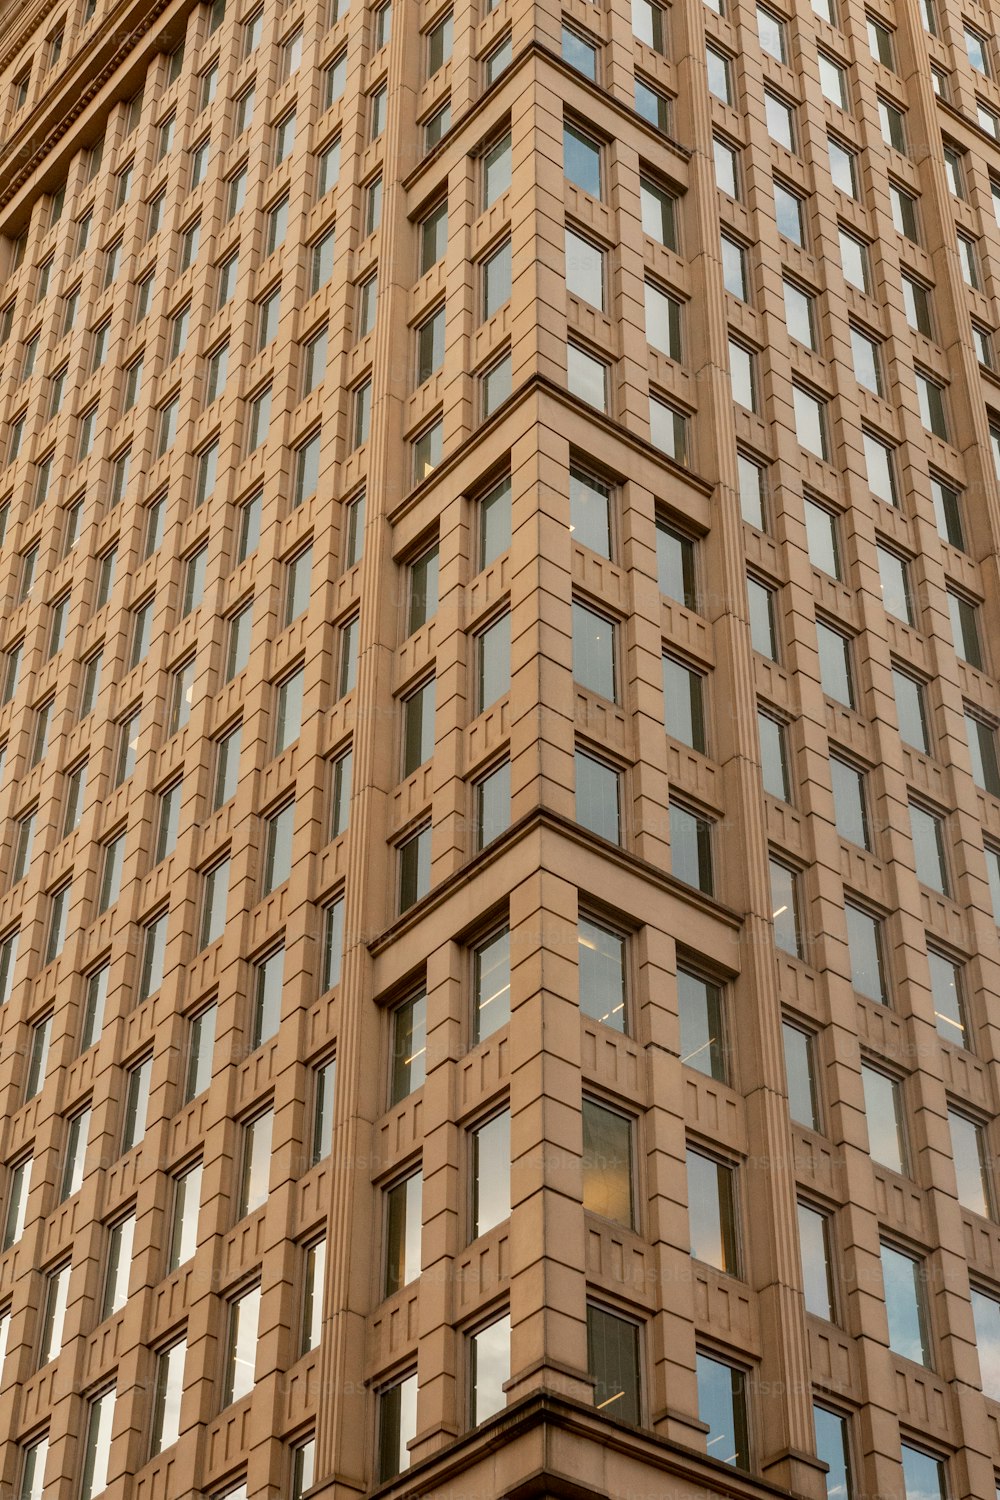 그 위에 많은 창문이 있는 고층 건물